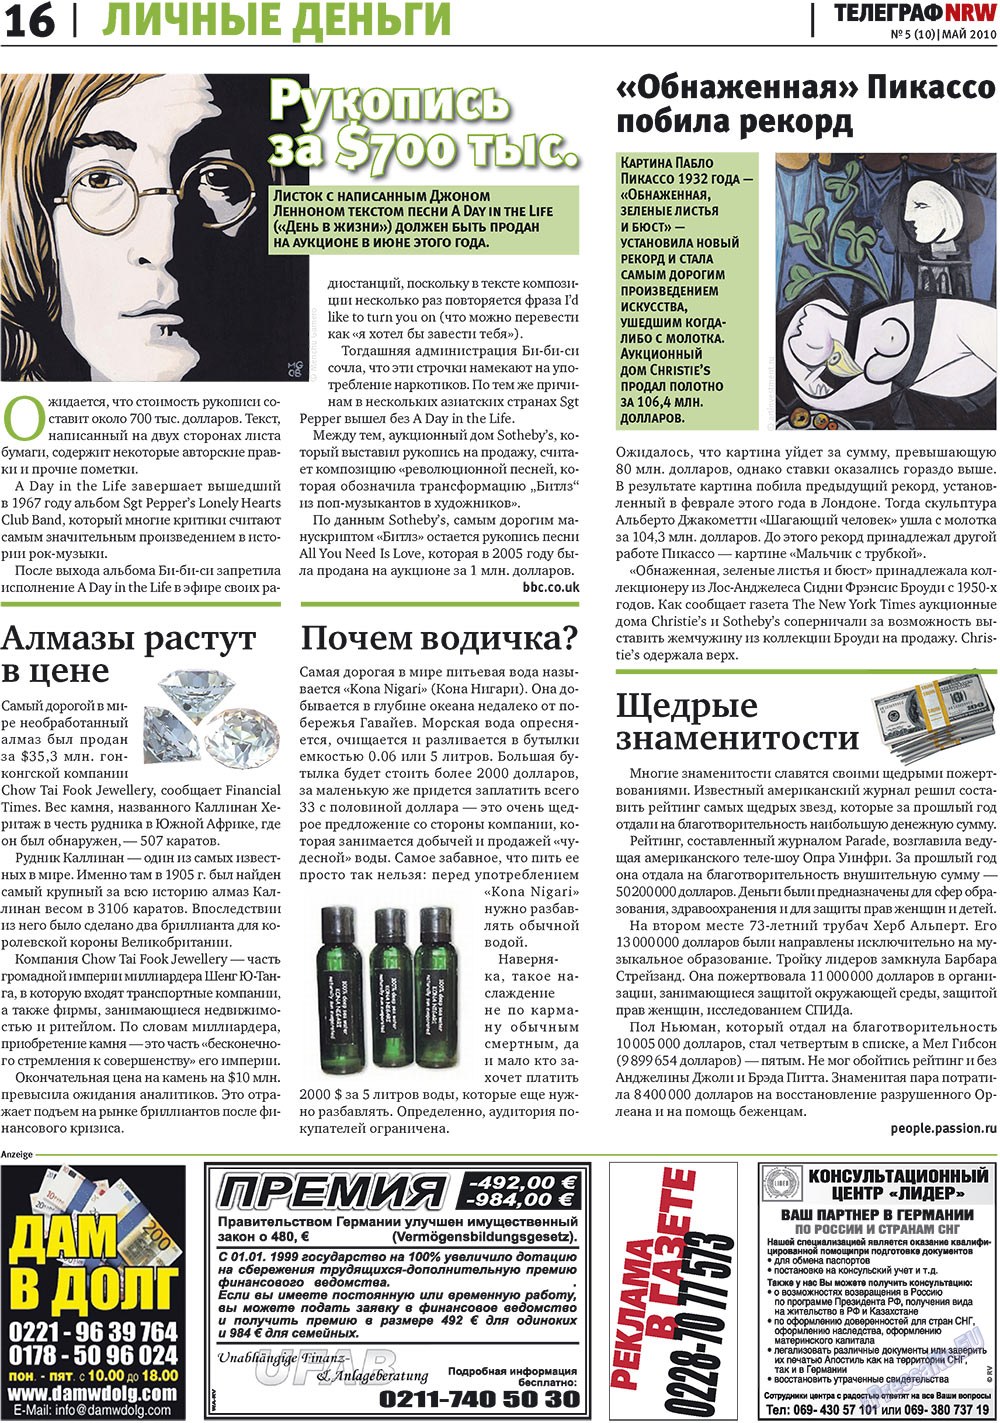 Телеграф NRW (газета). 2010 год, номер 5, стр. 16